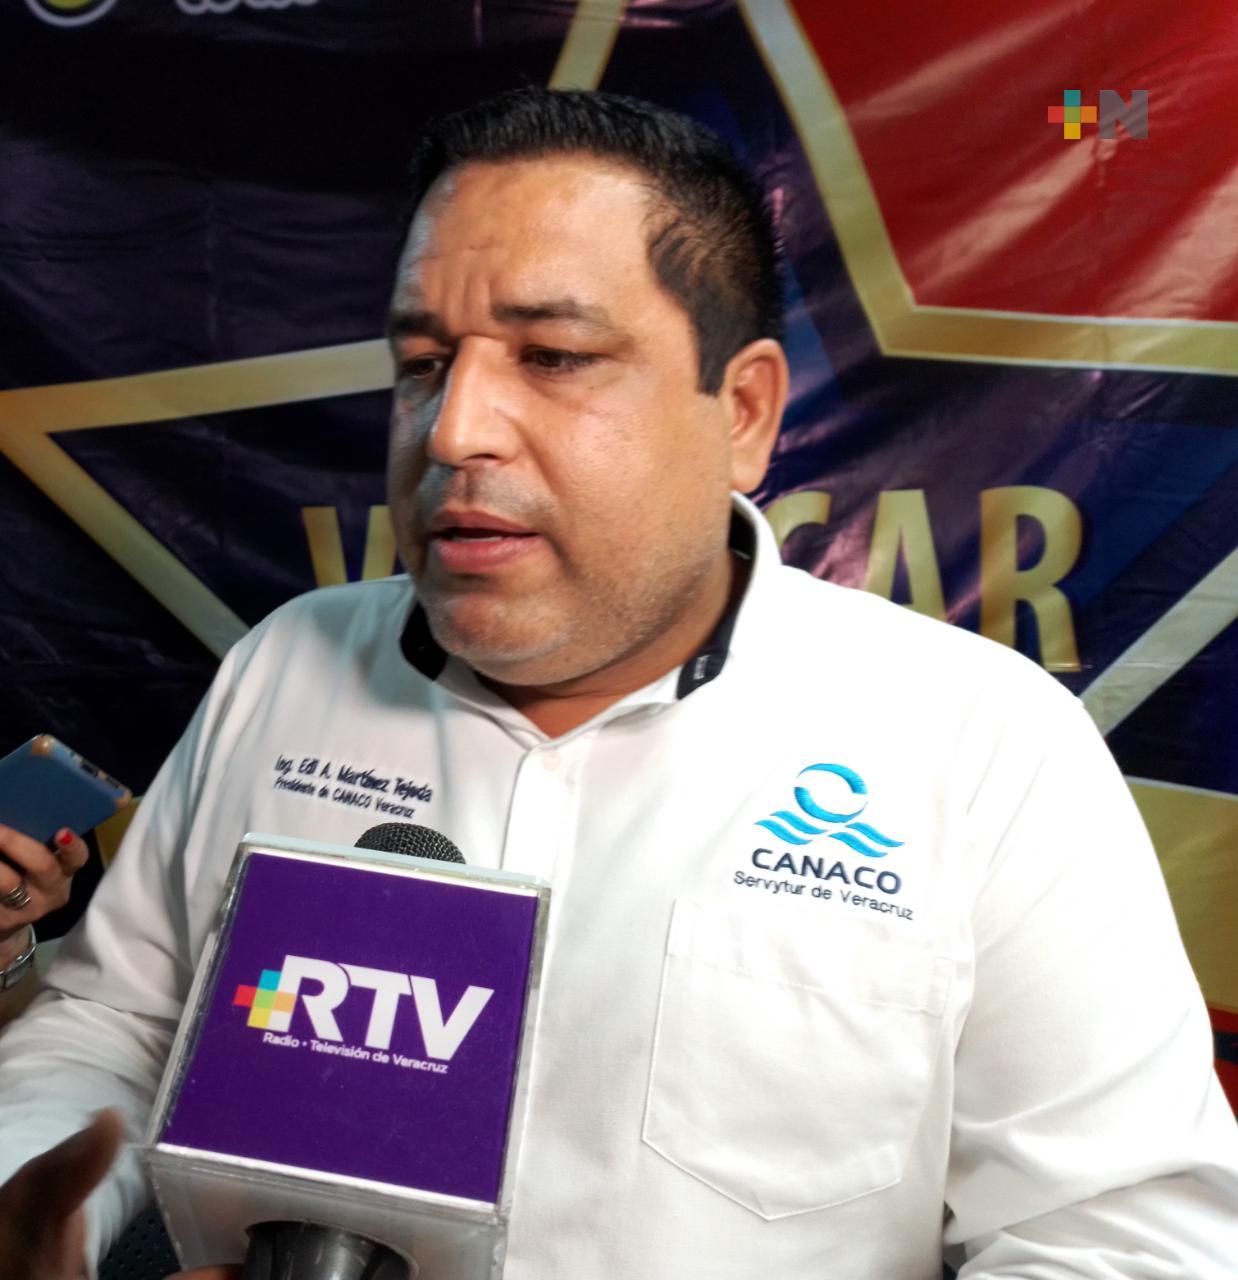 Salsa Fest generará más de 80% en ocupación hotelera: Canaco Veracruz